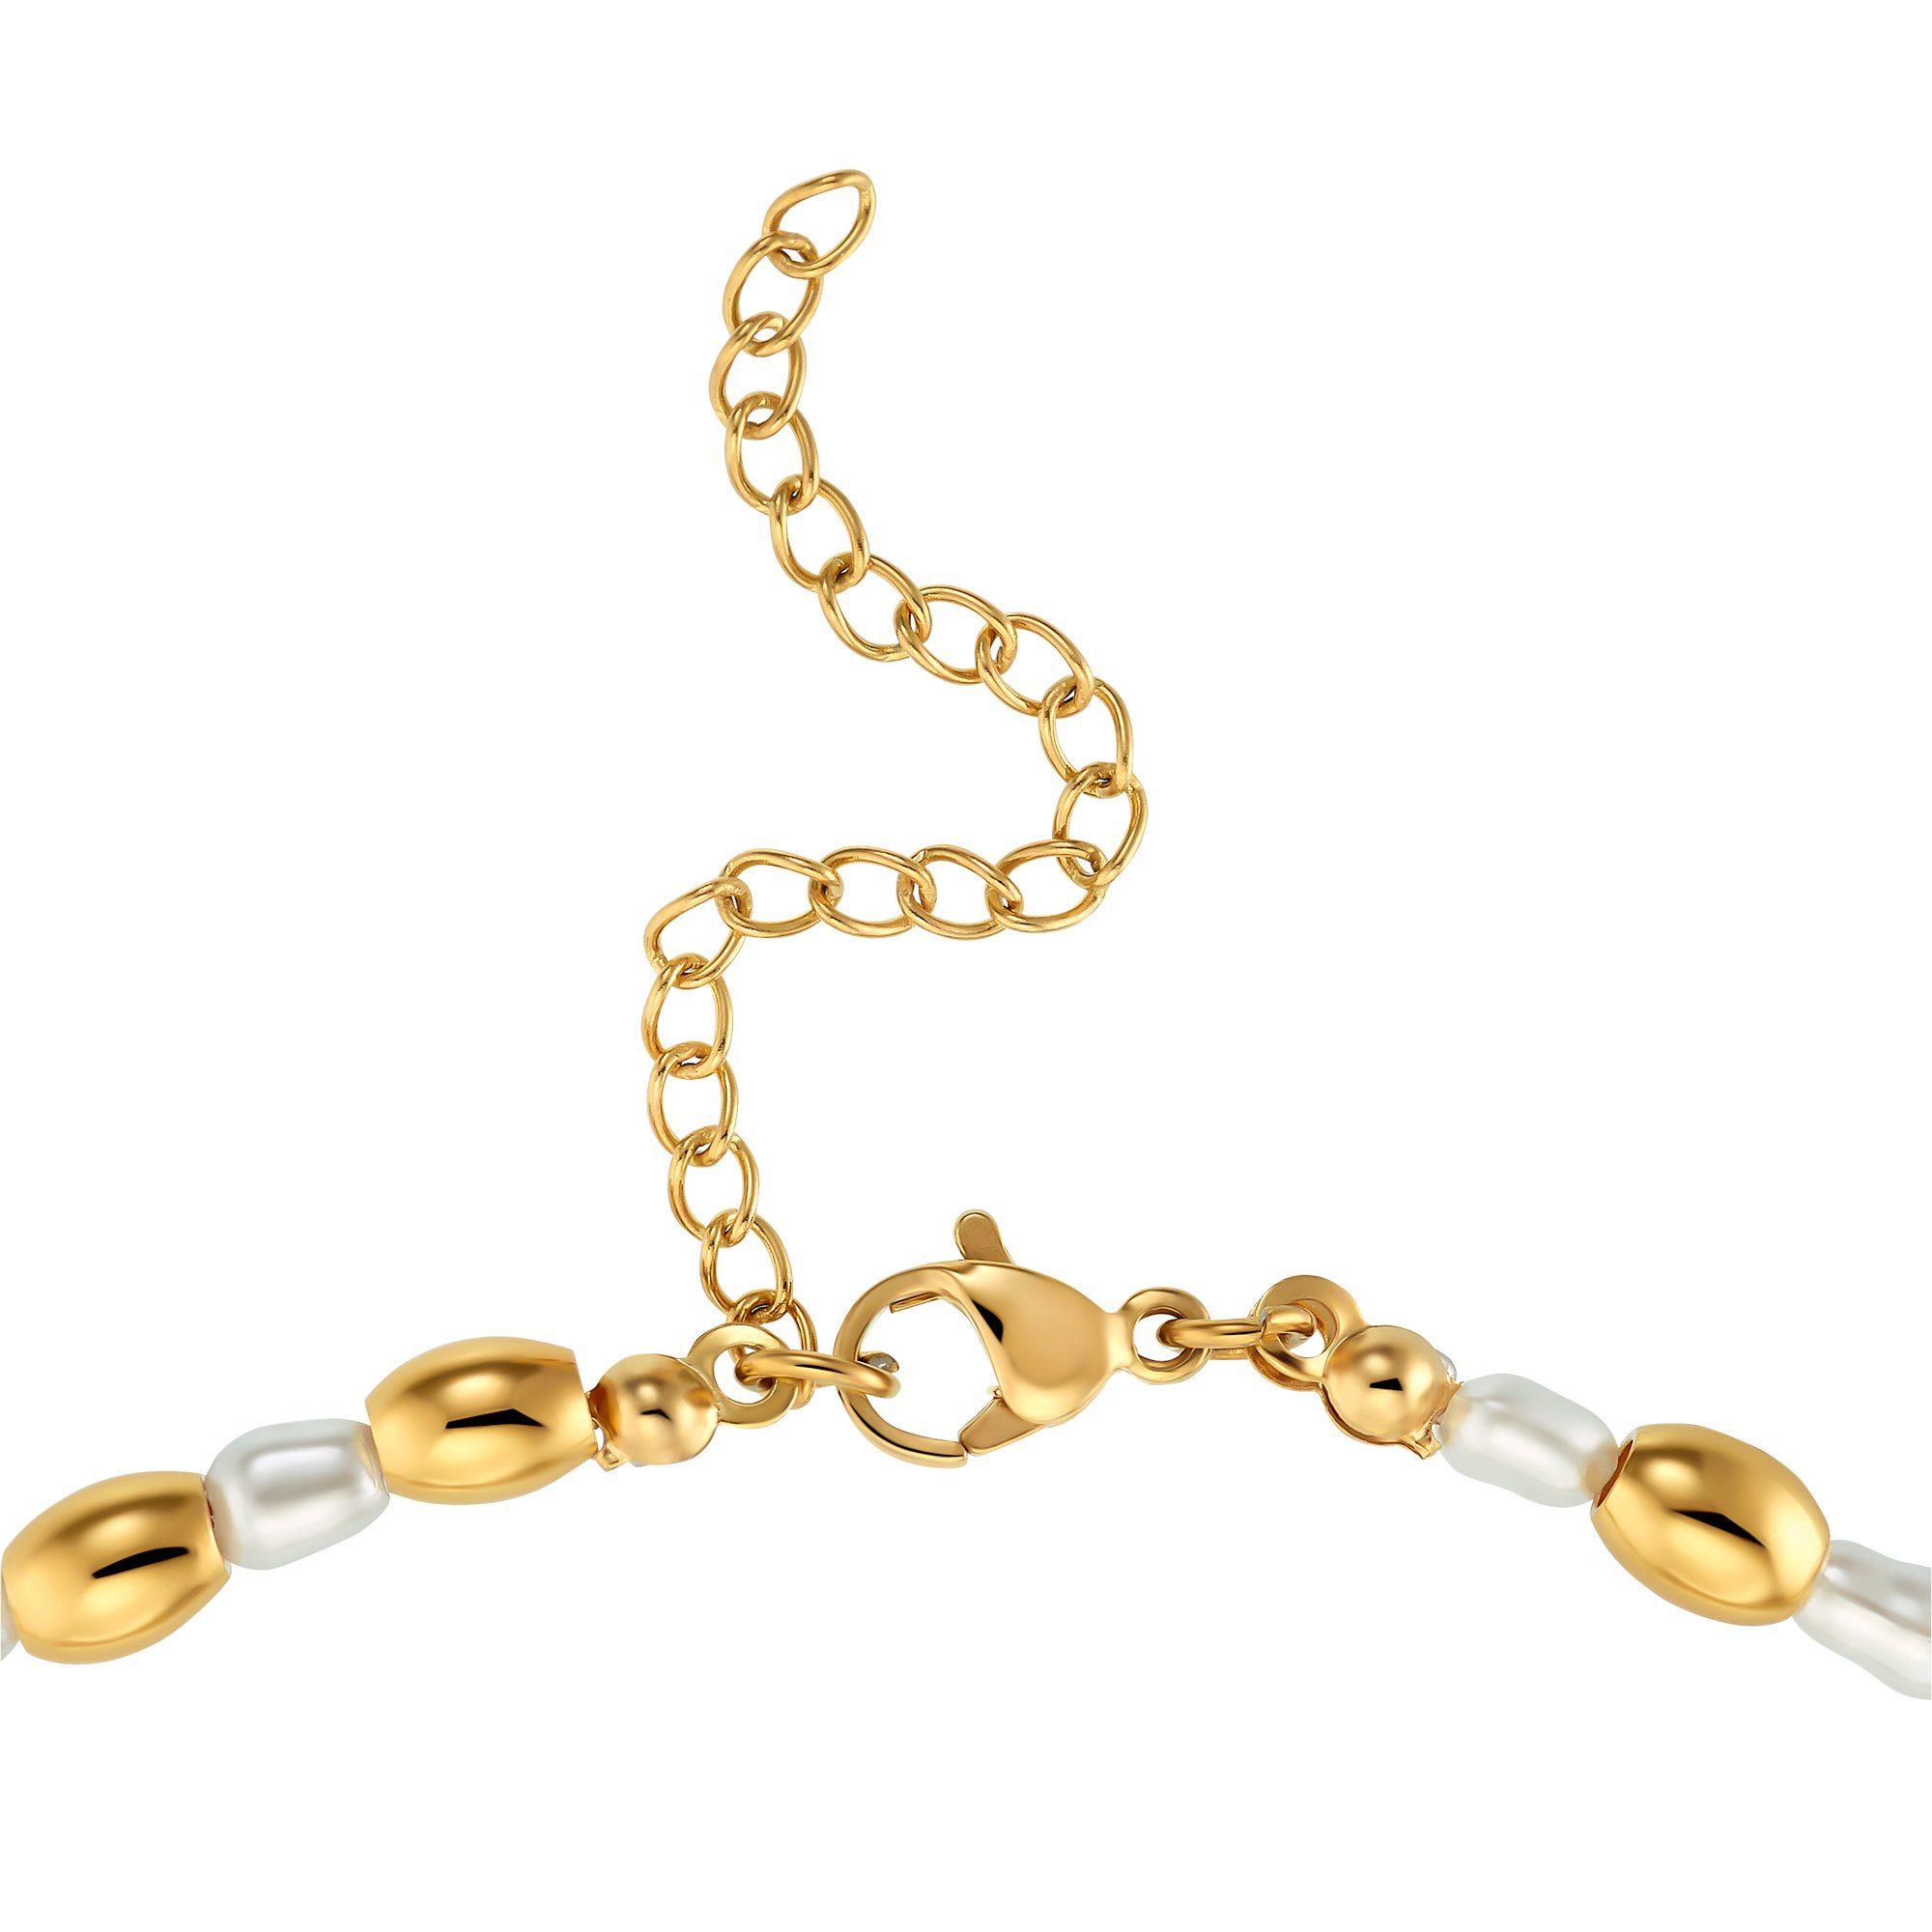 Heideman Collier Halskette (inkl. Perlen silberfarben poliert ausgefallenen Maya mit Geschenkverpackung), goldfarben